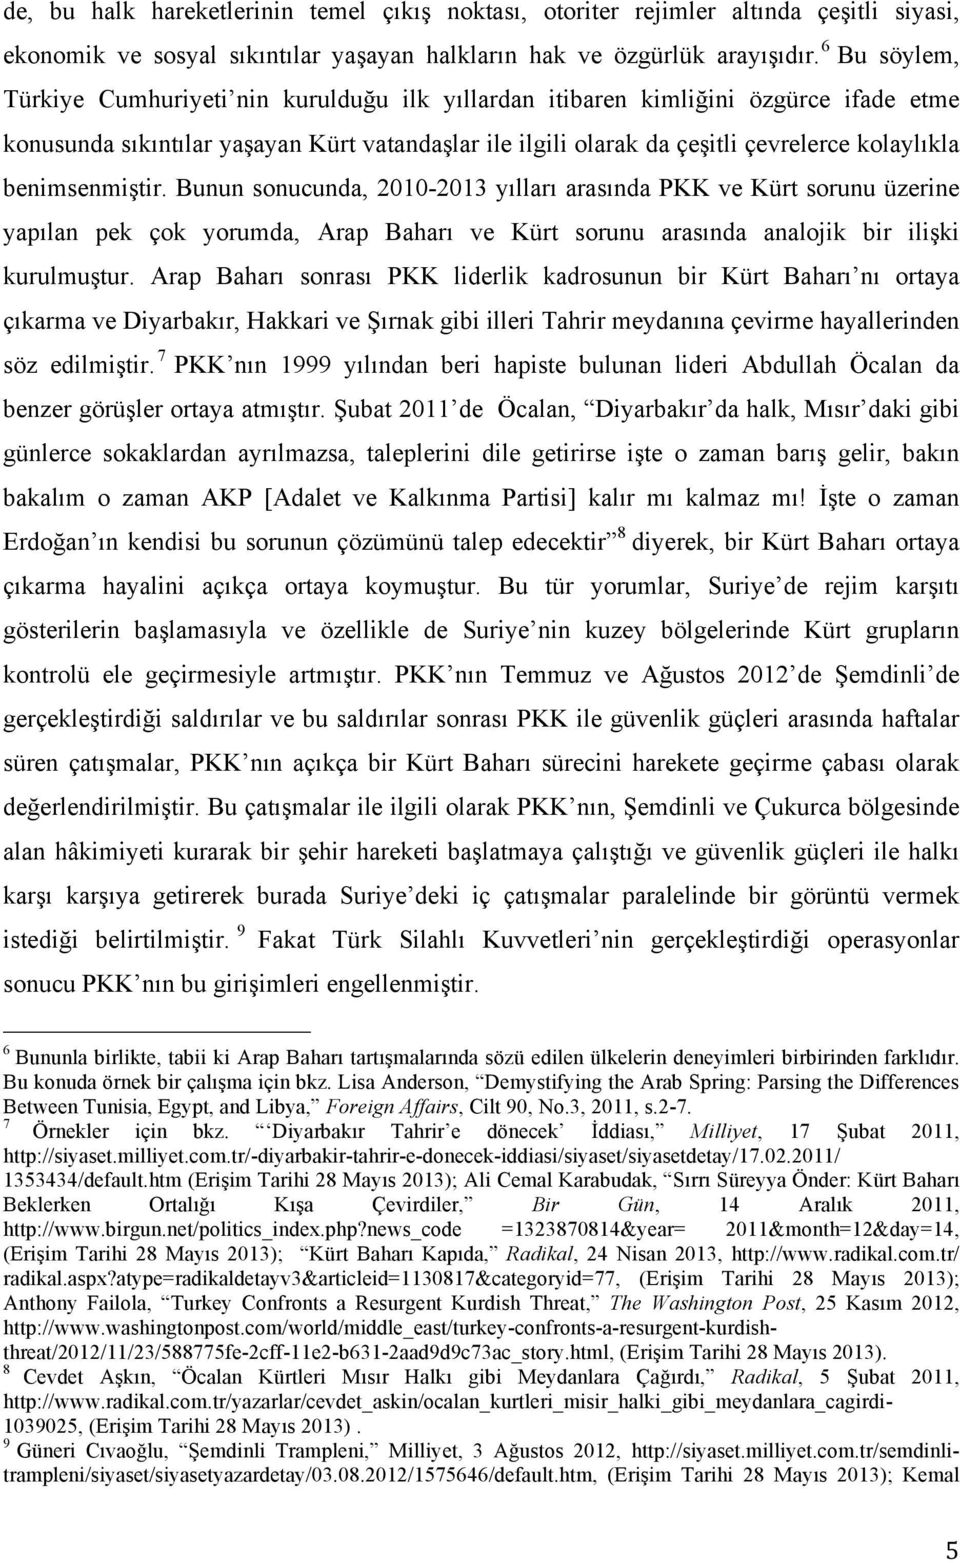 benimsenmiştir. Bunun sonucunda, 2010-2013 yılları arasında PKK ve Kürt sorunu üzerine yapılan pek çok yorumda, Arap Baharı ve Kürt sorunu arasında analojik bir ilişki kurulmuştur.